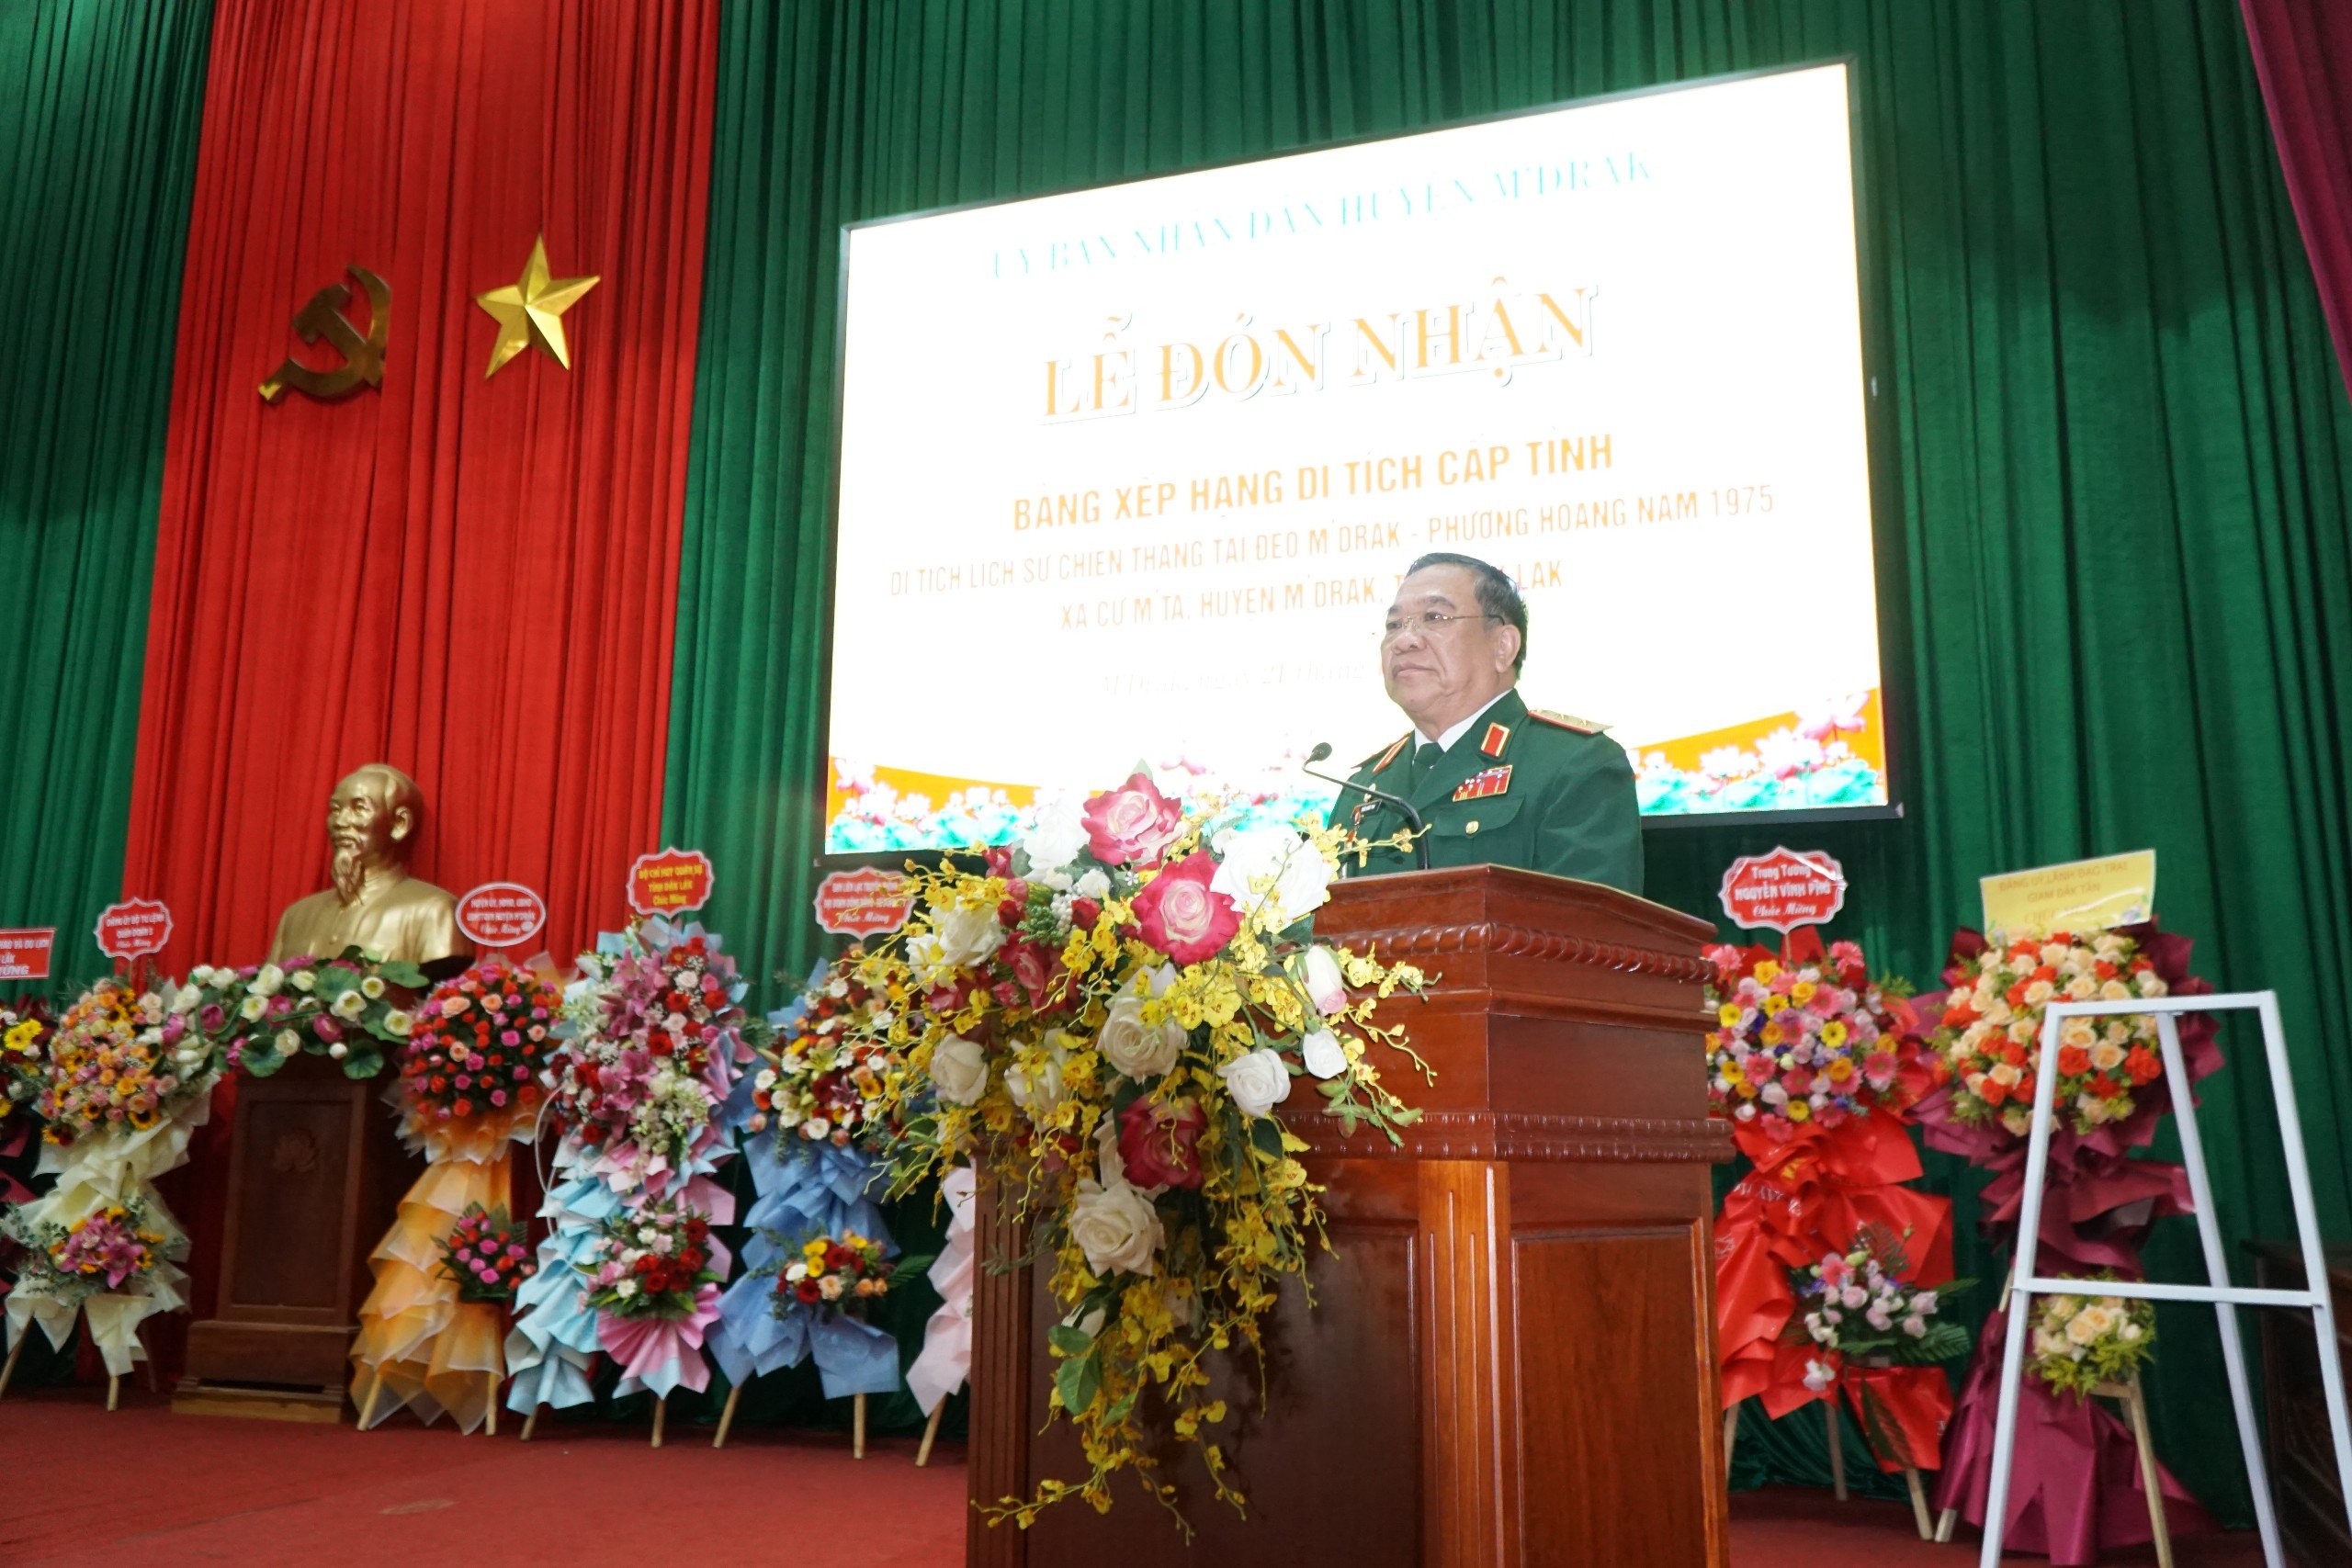 Trung tướng Trần Quốc Phú - nguyên Sư trưởng Sư đoàn 10, nguyên Phó Tư lệnh Quân đoàn 3, nguyên Tư lệnh Quân đoàn 1, Trưởng ban Liên lạc bạn chiến đấu Sư đoàn 10, phát biểu tại Lễ đón nhận Bằng xếp hạng Di tích